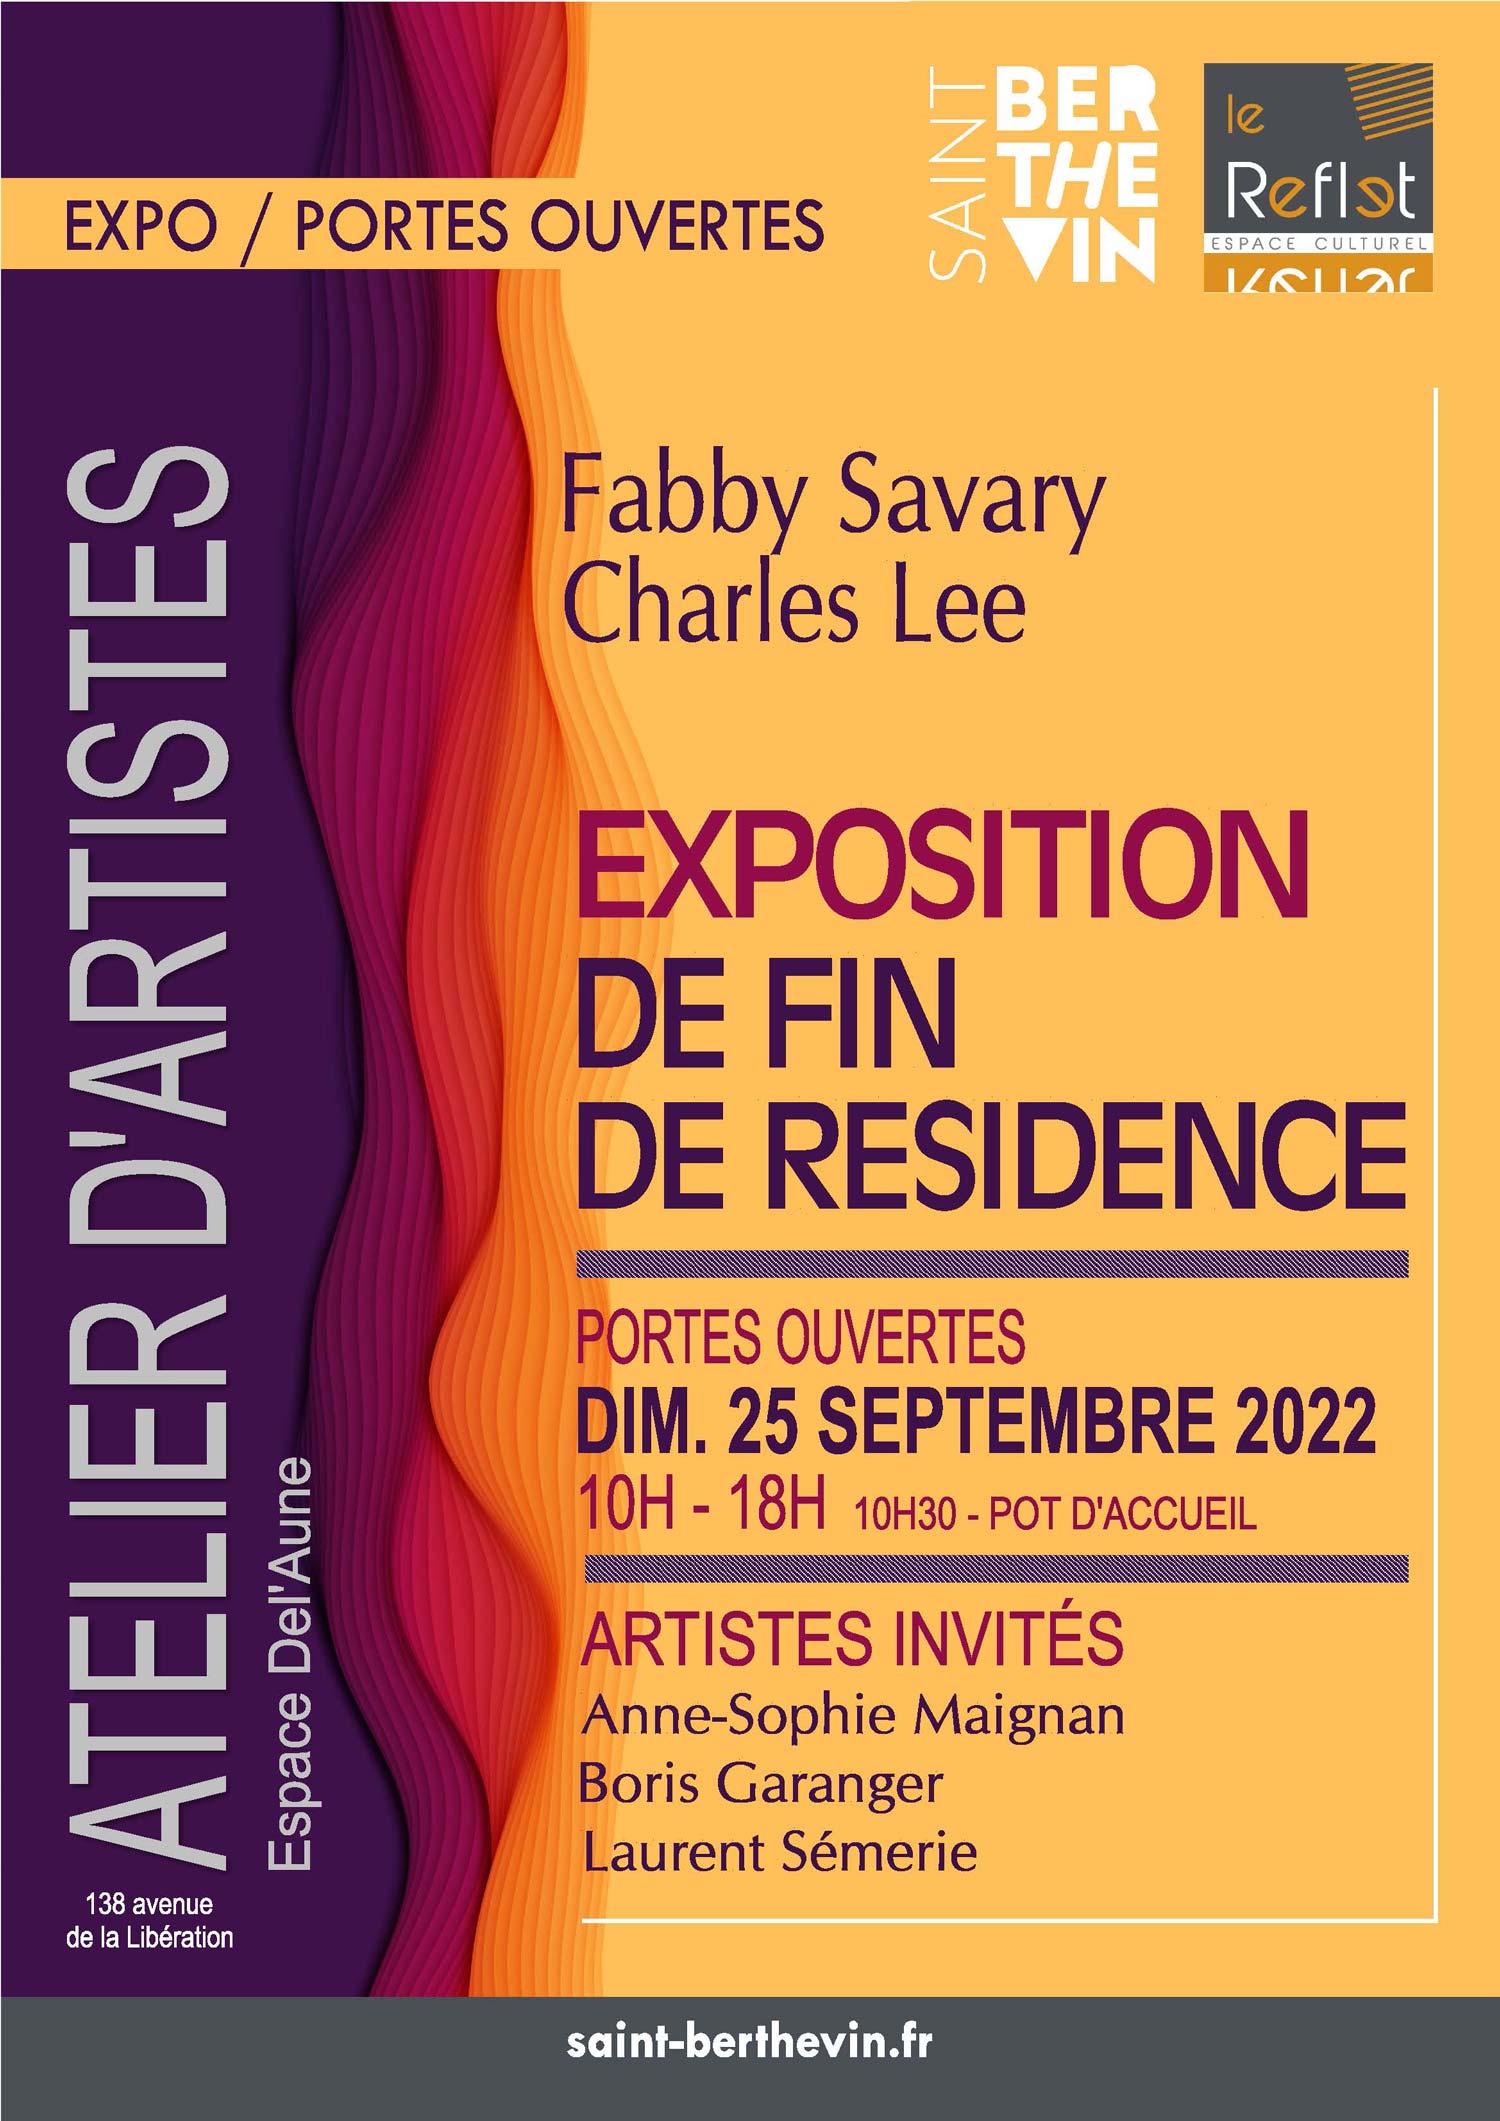 Expo CLOTURE de résidence 25 09 22 Fabby Savary